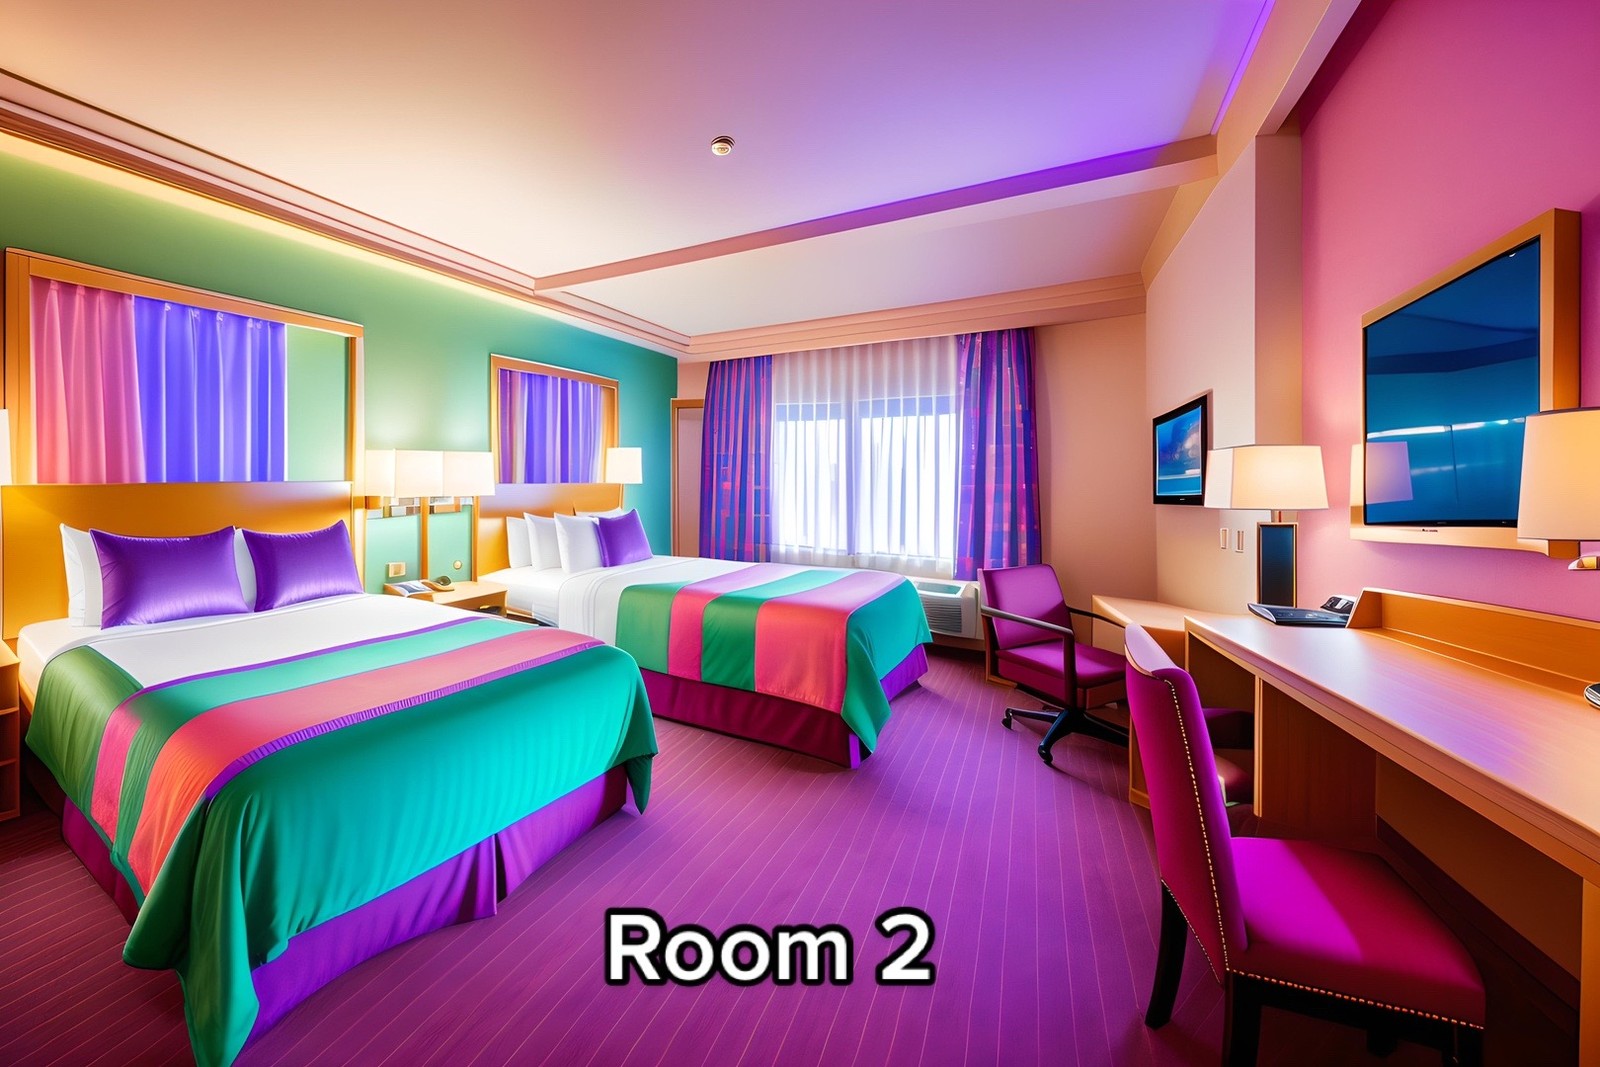 Quarto família básico com uma cama de casal e outra de solteiro do resort inspirado em Hannah Montana — Foto: aipresence / TikTok / Reprodução